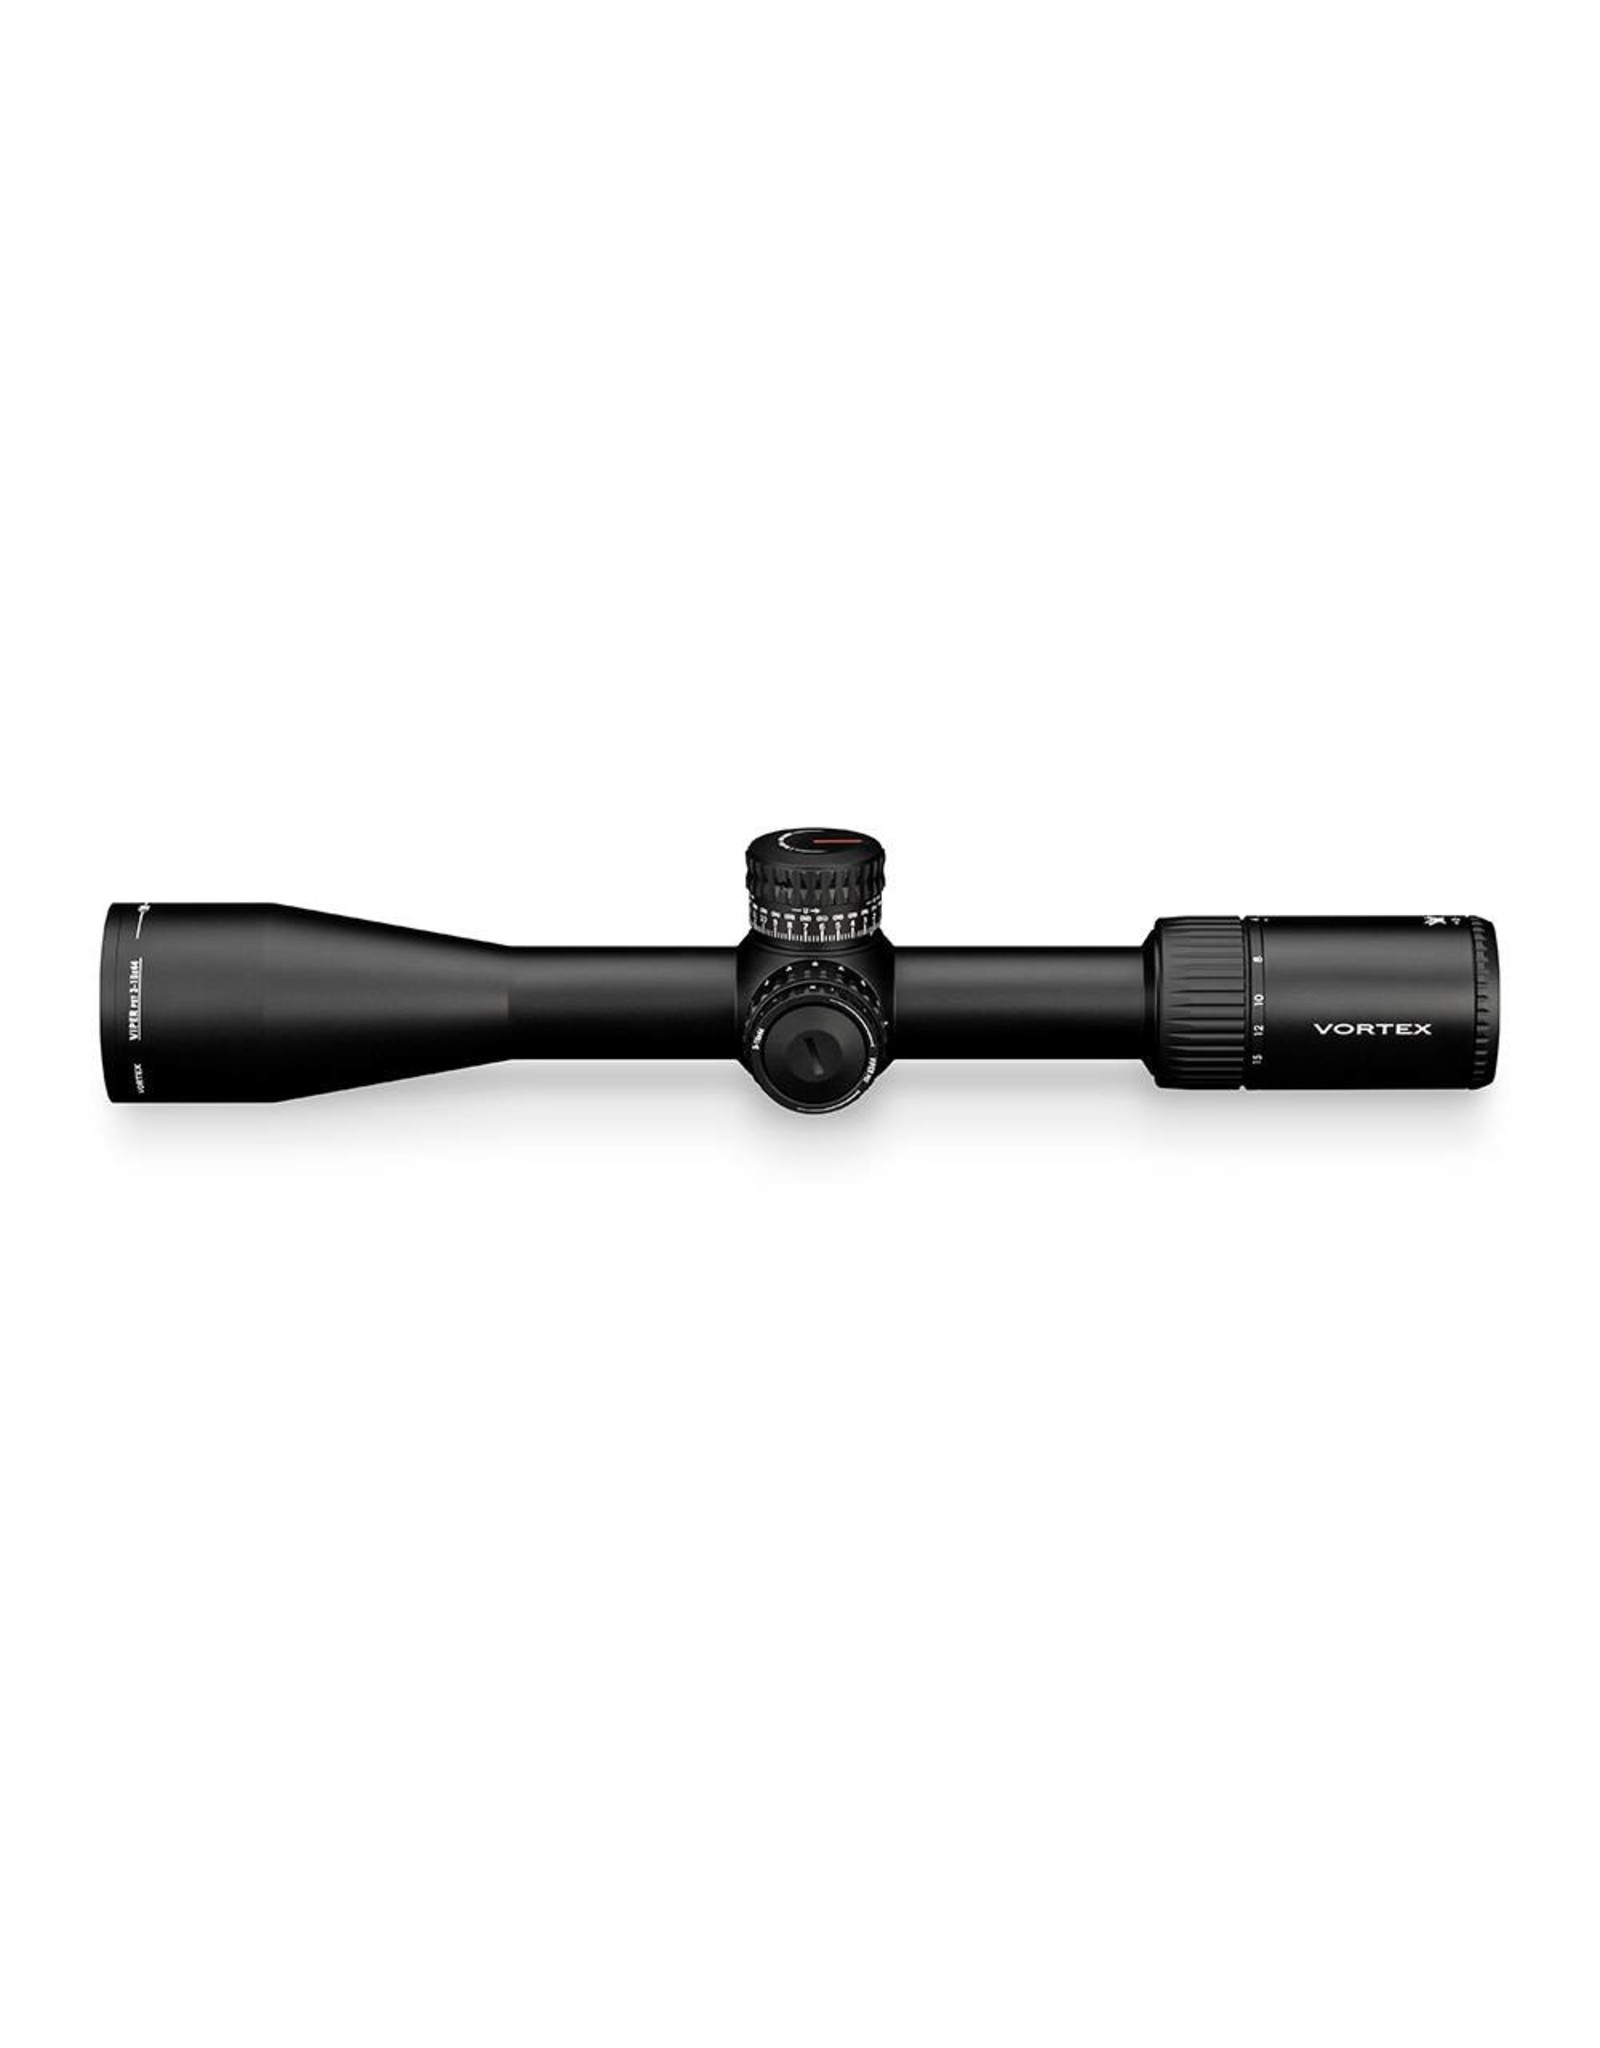 Vortex Vortex Viper PST 3-15x44 FFP Riflescope with EBR-2C MOA